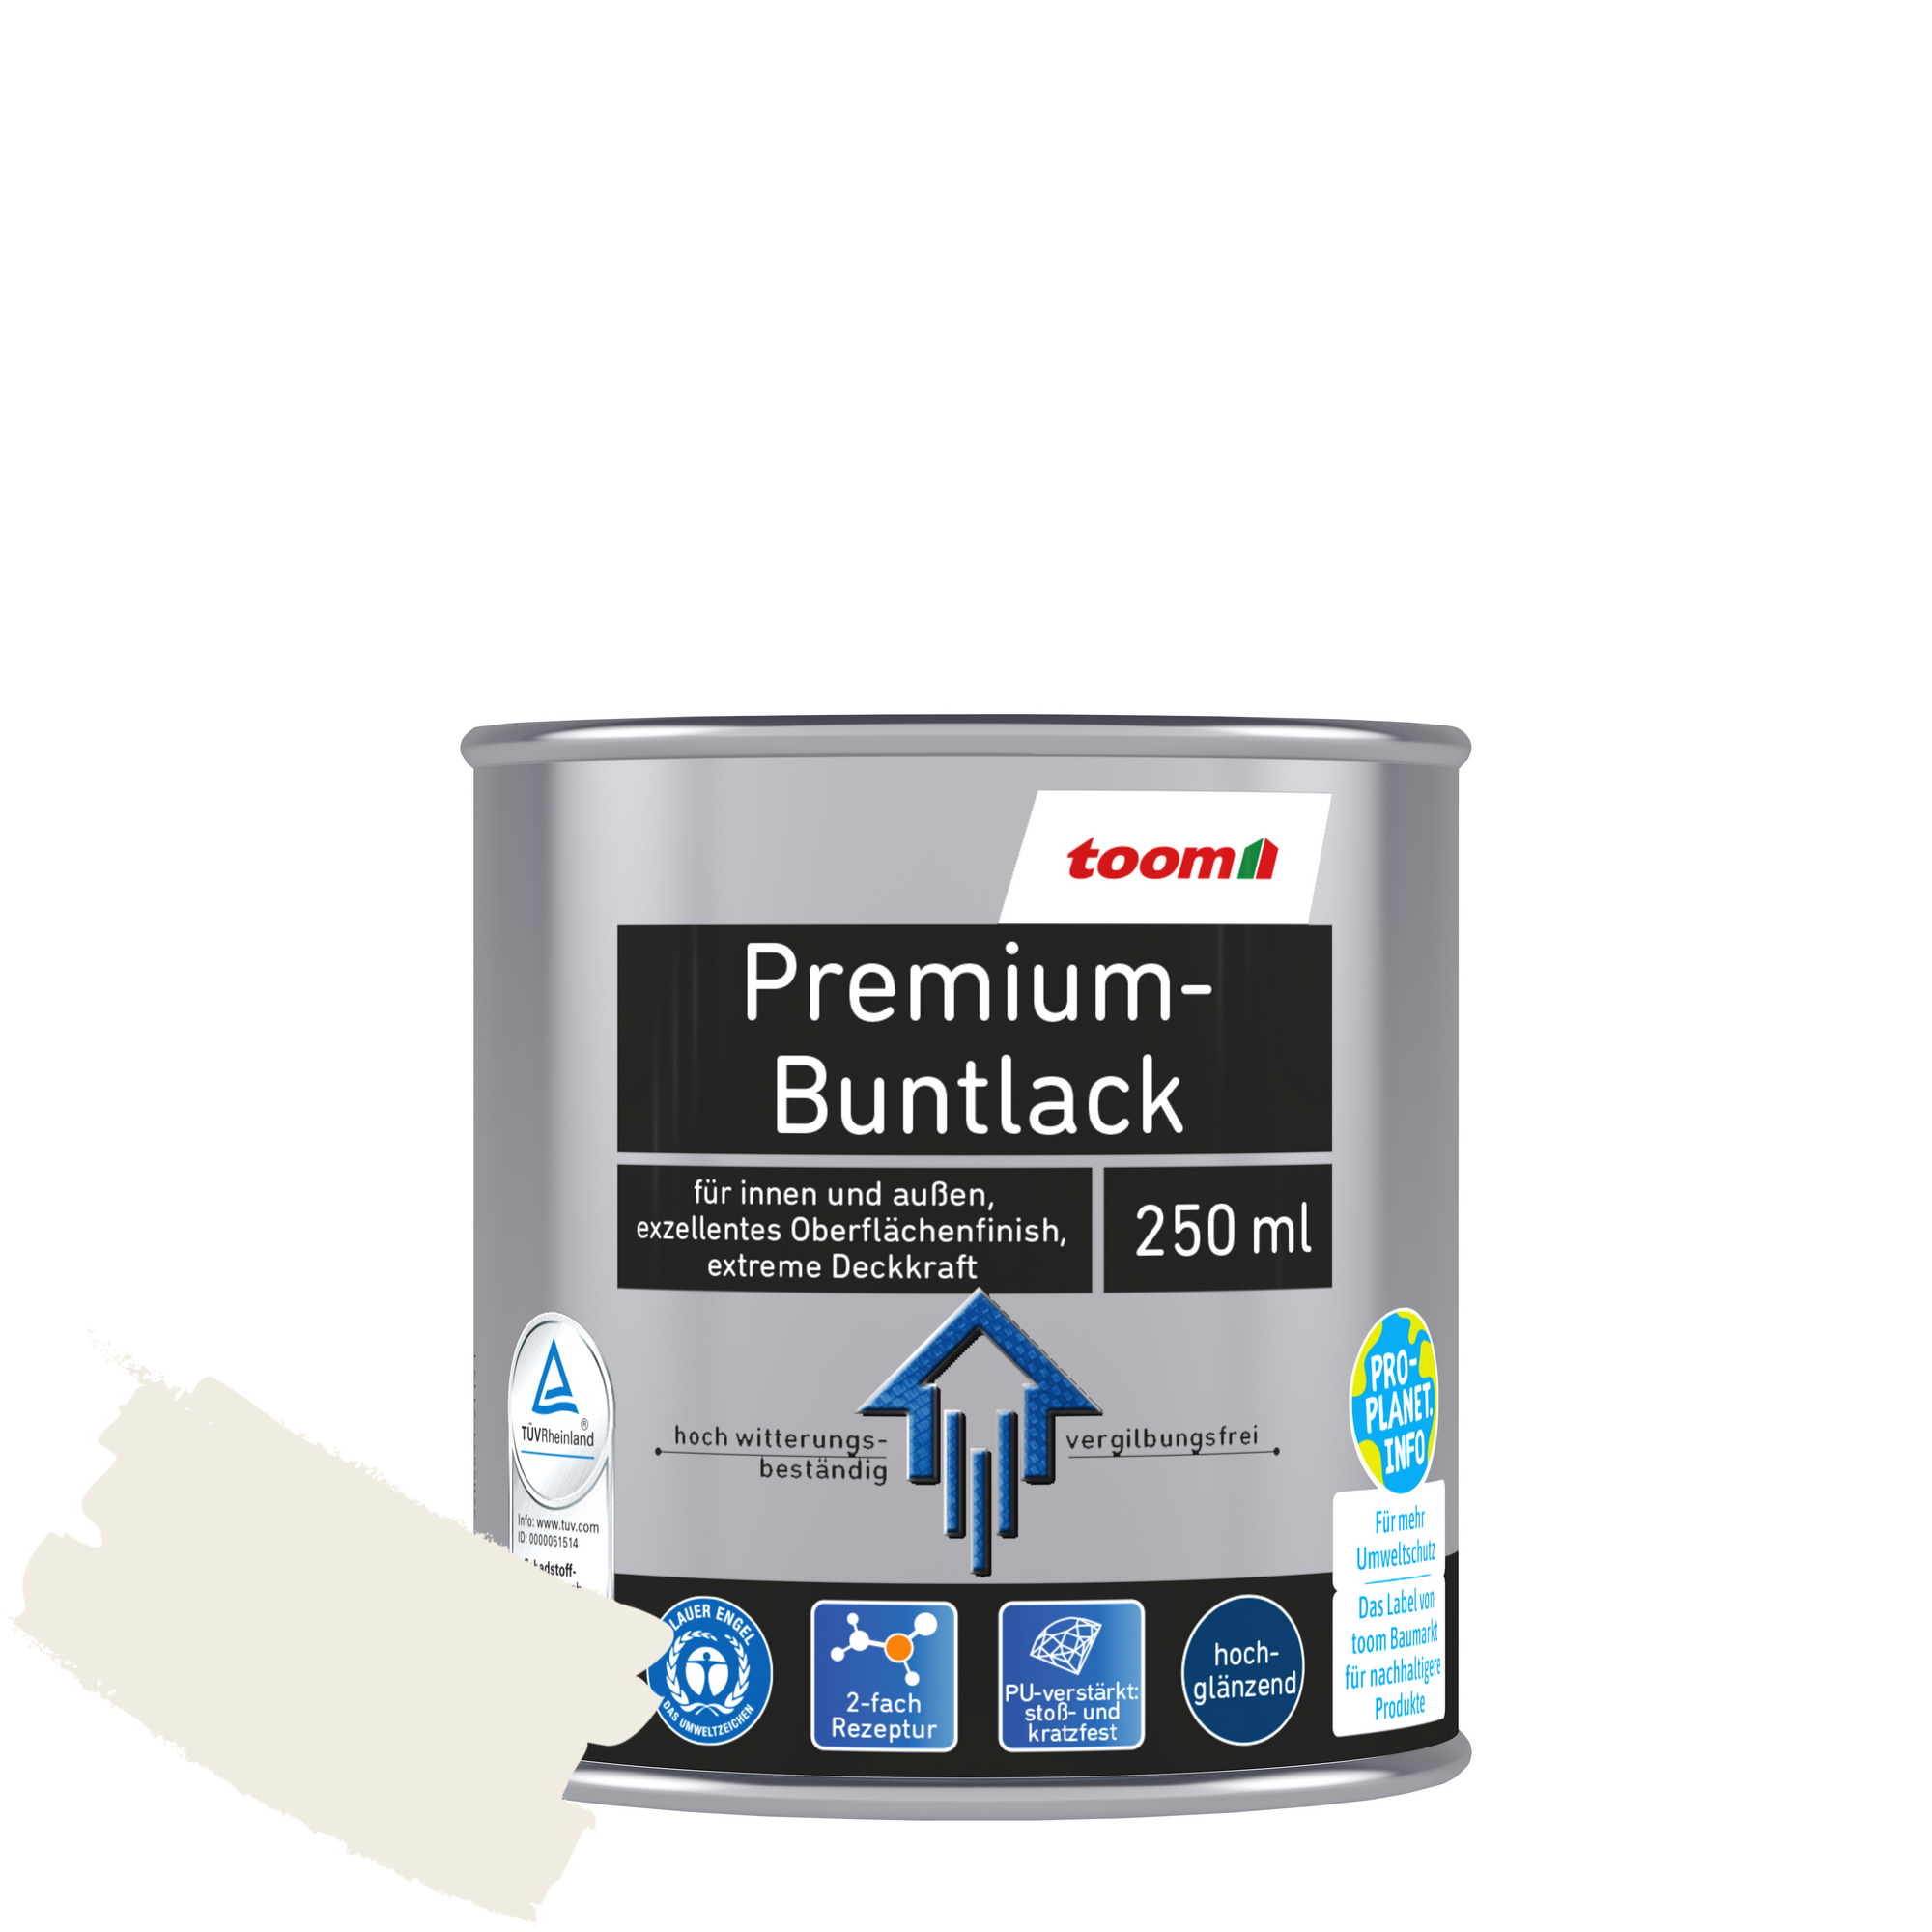 Premium-Buntlack 'Bergkristall' cremeweiß glänzend 250 ml + product picture